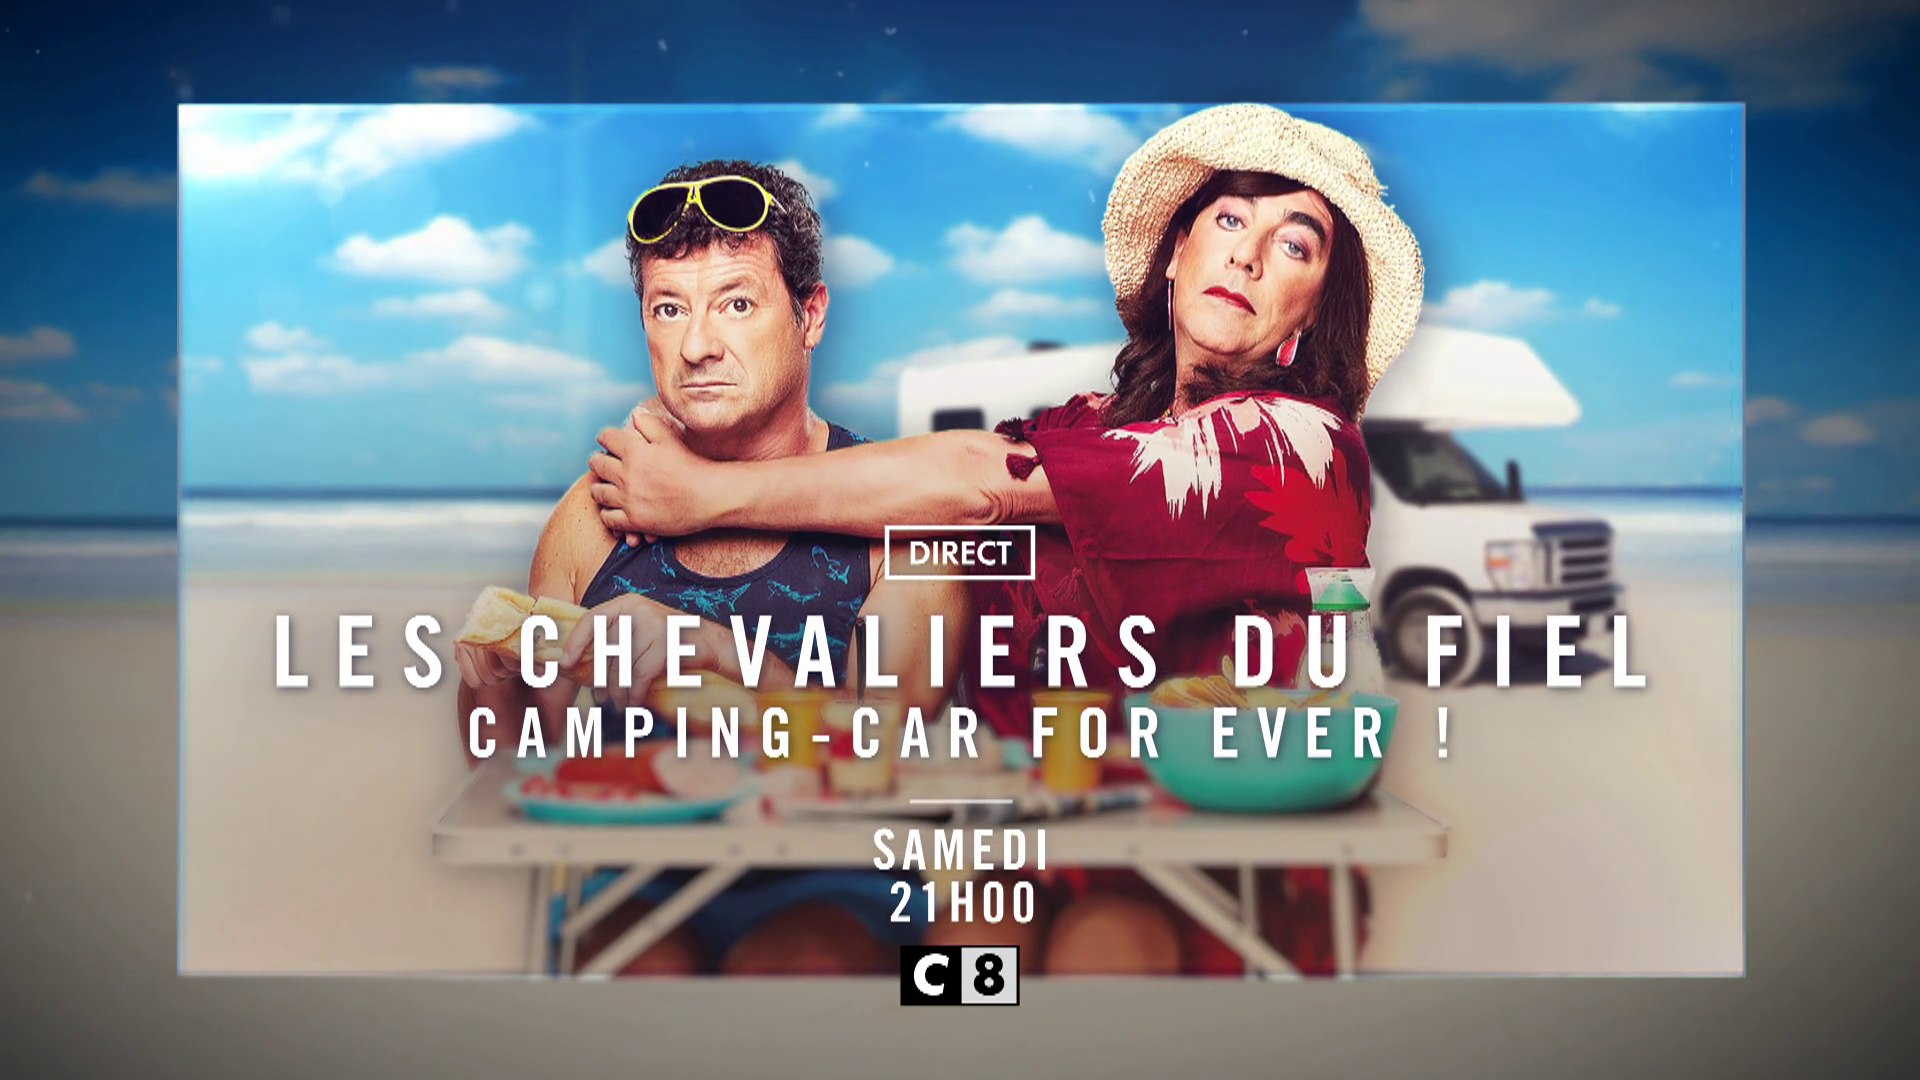 Les Chevaliers du fiel : Camping-car forever (c8) - Vidéo Dailymotion